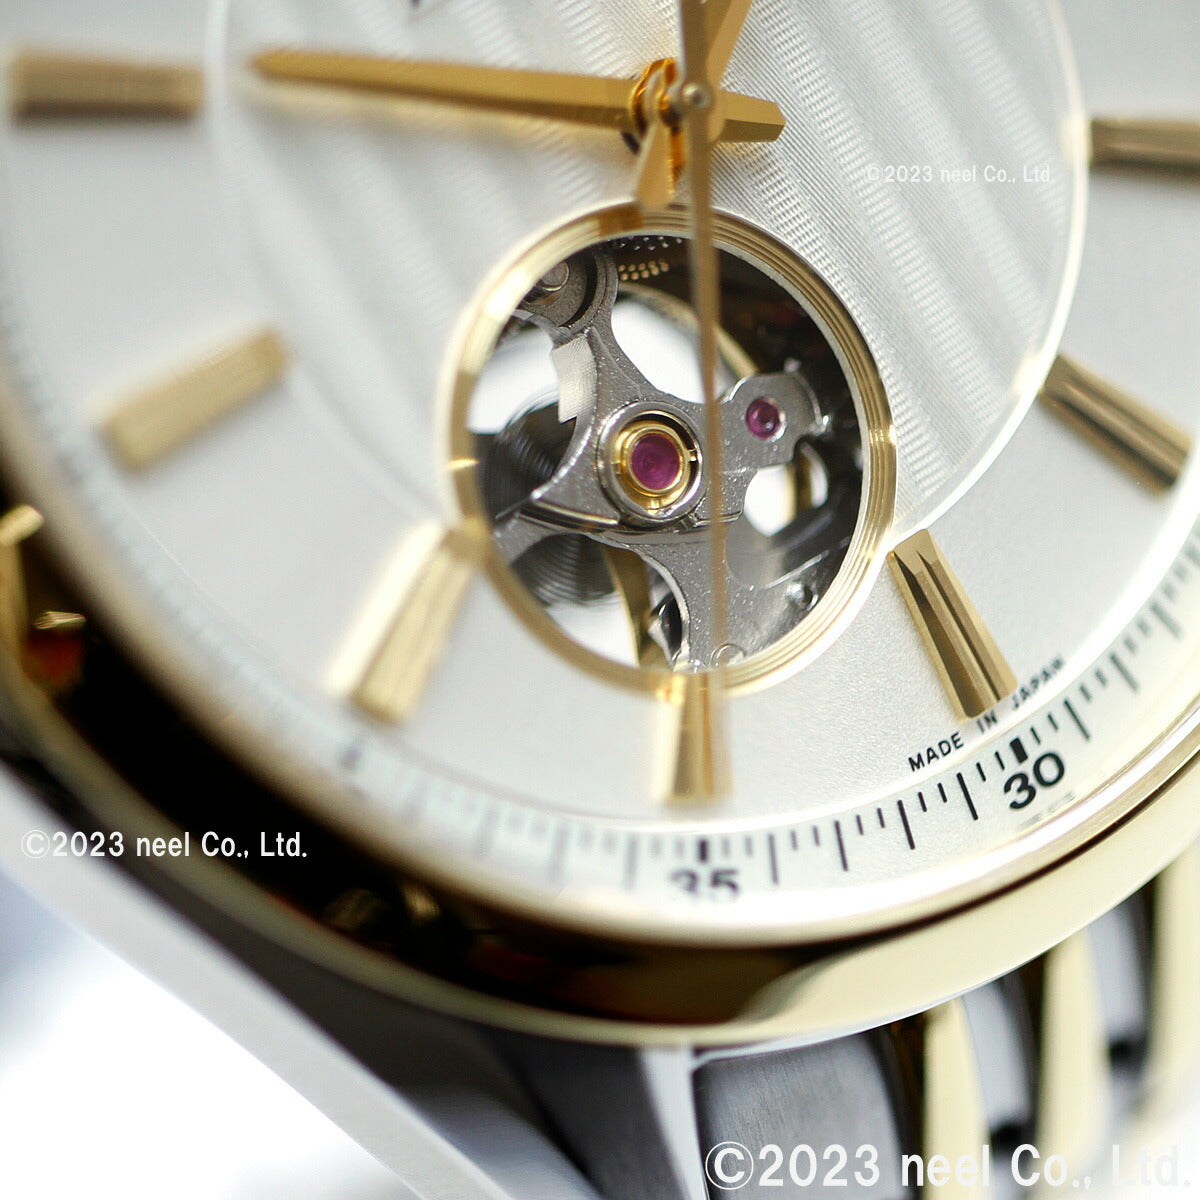 シチズンコレクション CITIZEN COLLECTION メカニカル 自動巻き 機械式 腕時計 メンズ NH9114-99P